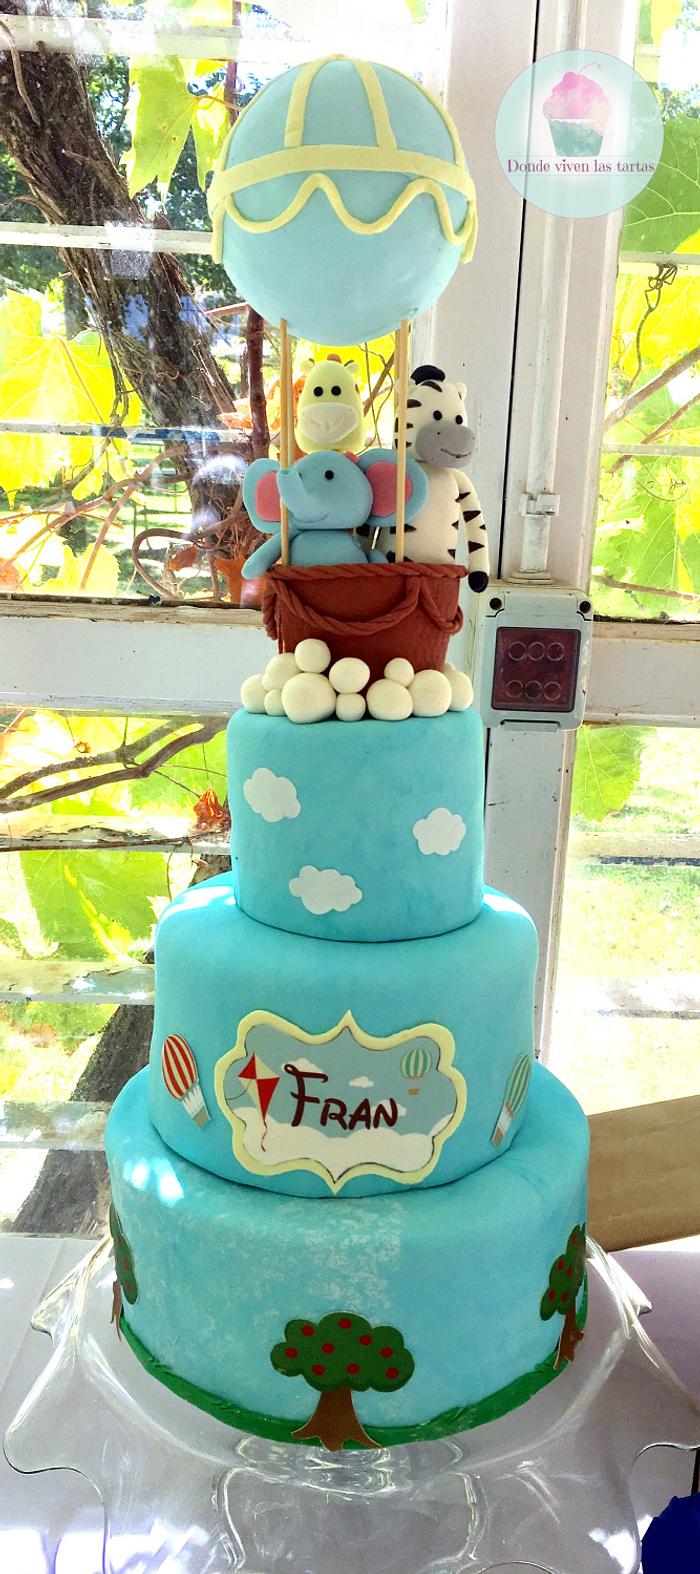 Fran's cake